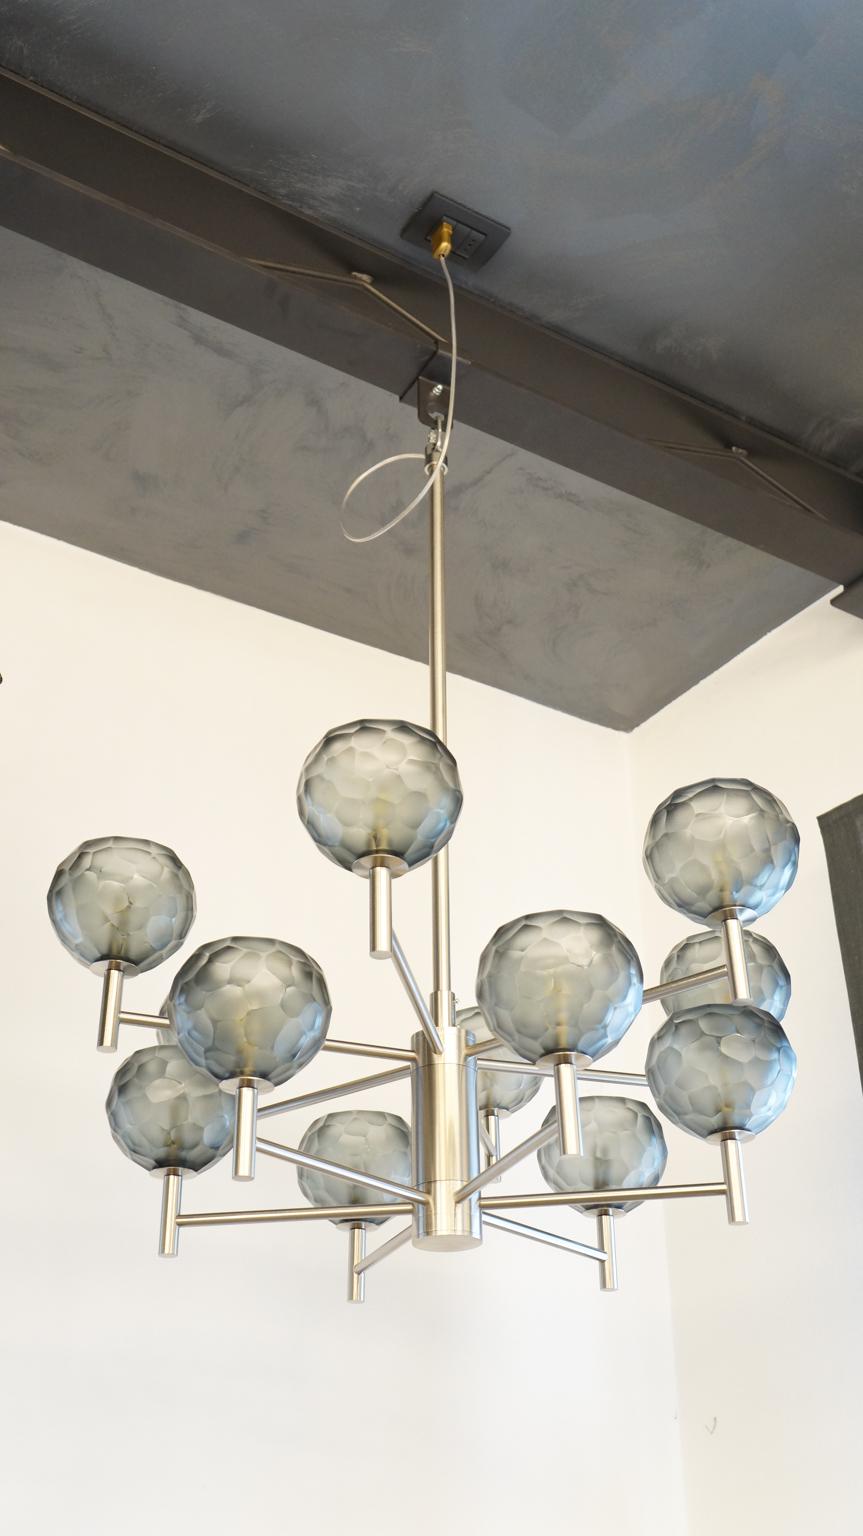 Kronleuchter aus Murano-Glas von Alberto Donà mit grauen, gravierten Glaselementen. 
Kronleuchter mit 12 Lichtern und satiniertem Silberrahmen. Ideal sowohl für ein modernes als auch für ein klassisches Umfeld.

Entworfen von Alberto Dona' im